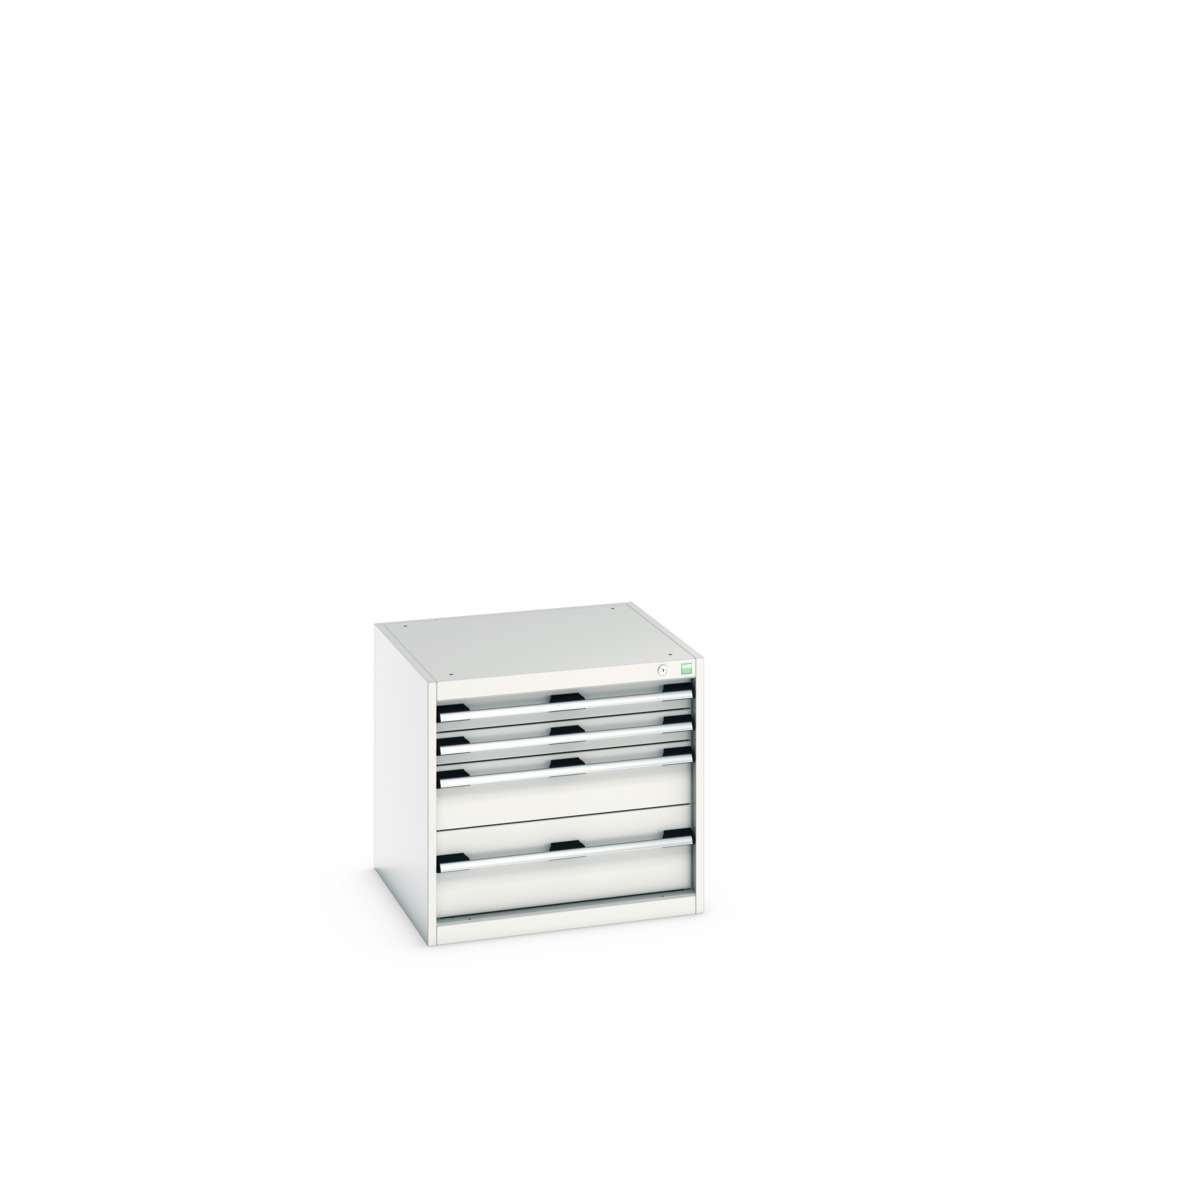 40019015.16V - cubio drawer cabinet